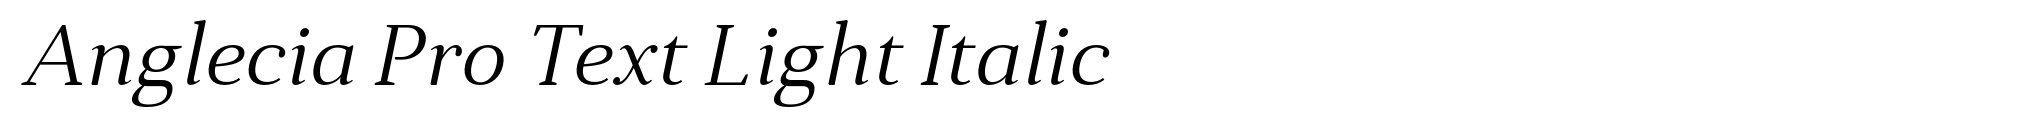 Anglecia Pro Text Light Italic image